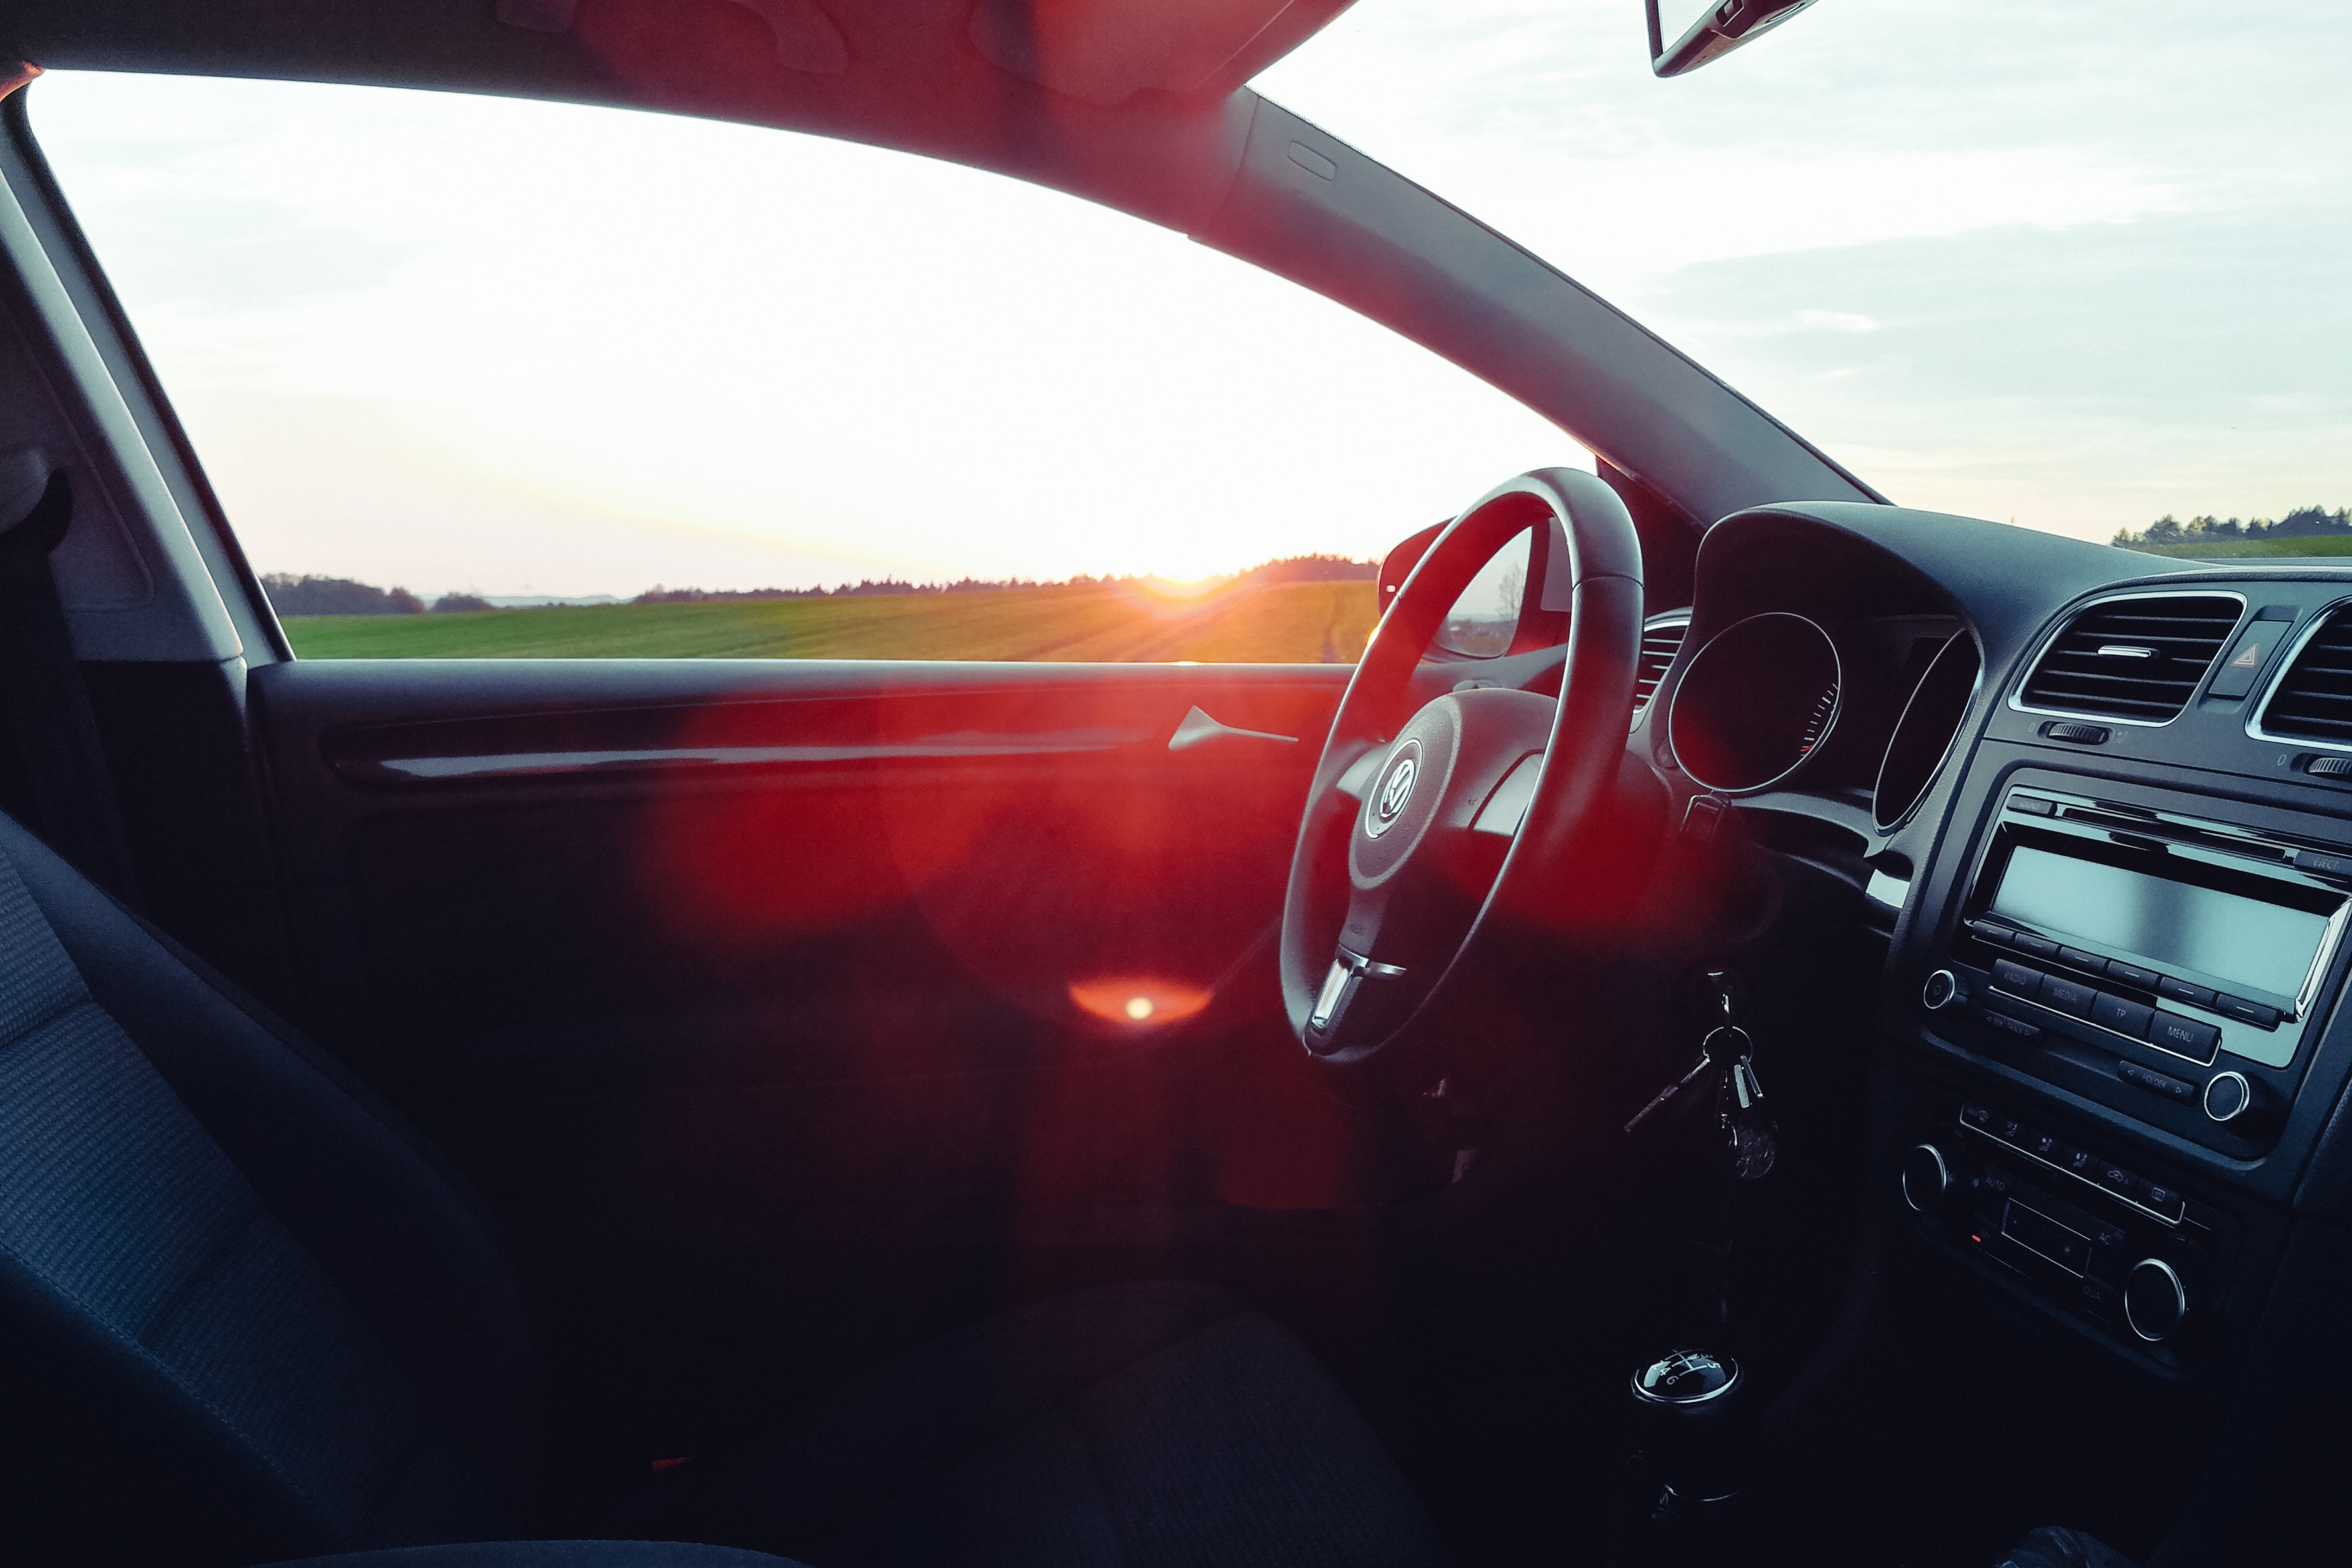 Innenaufnahme eines VW-Autos mit Sonnenuntergang im Hintergrund